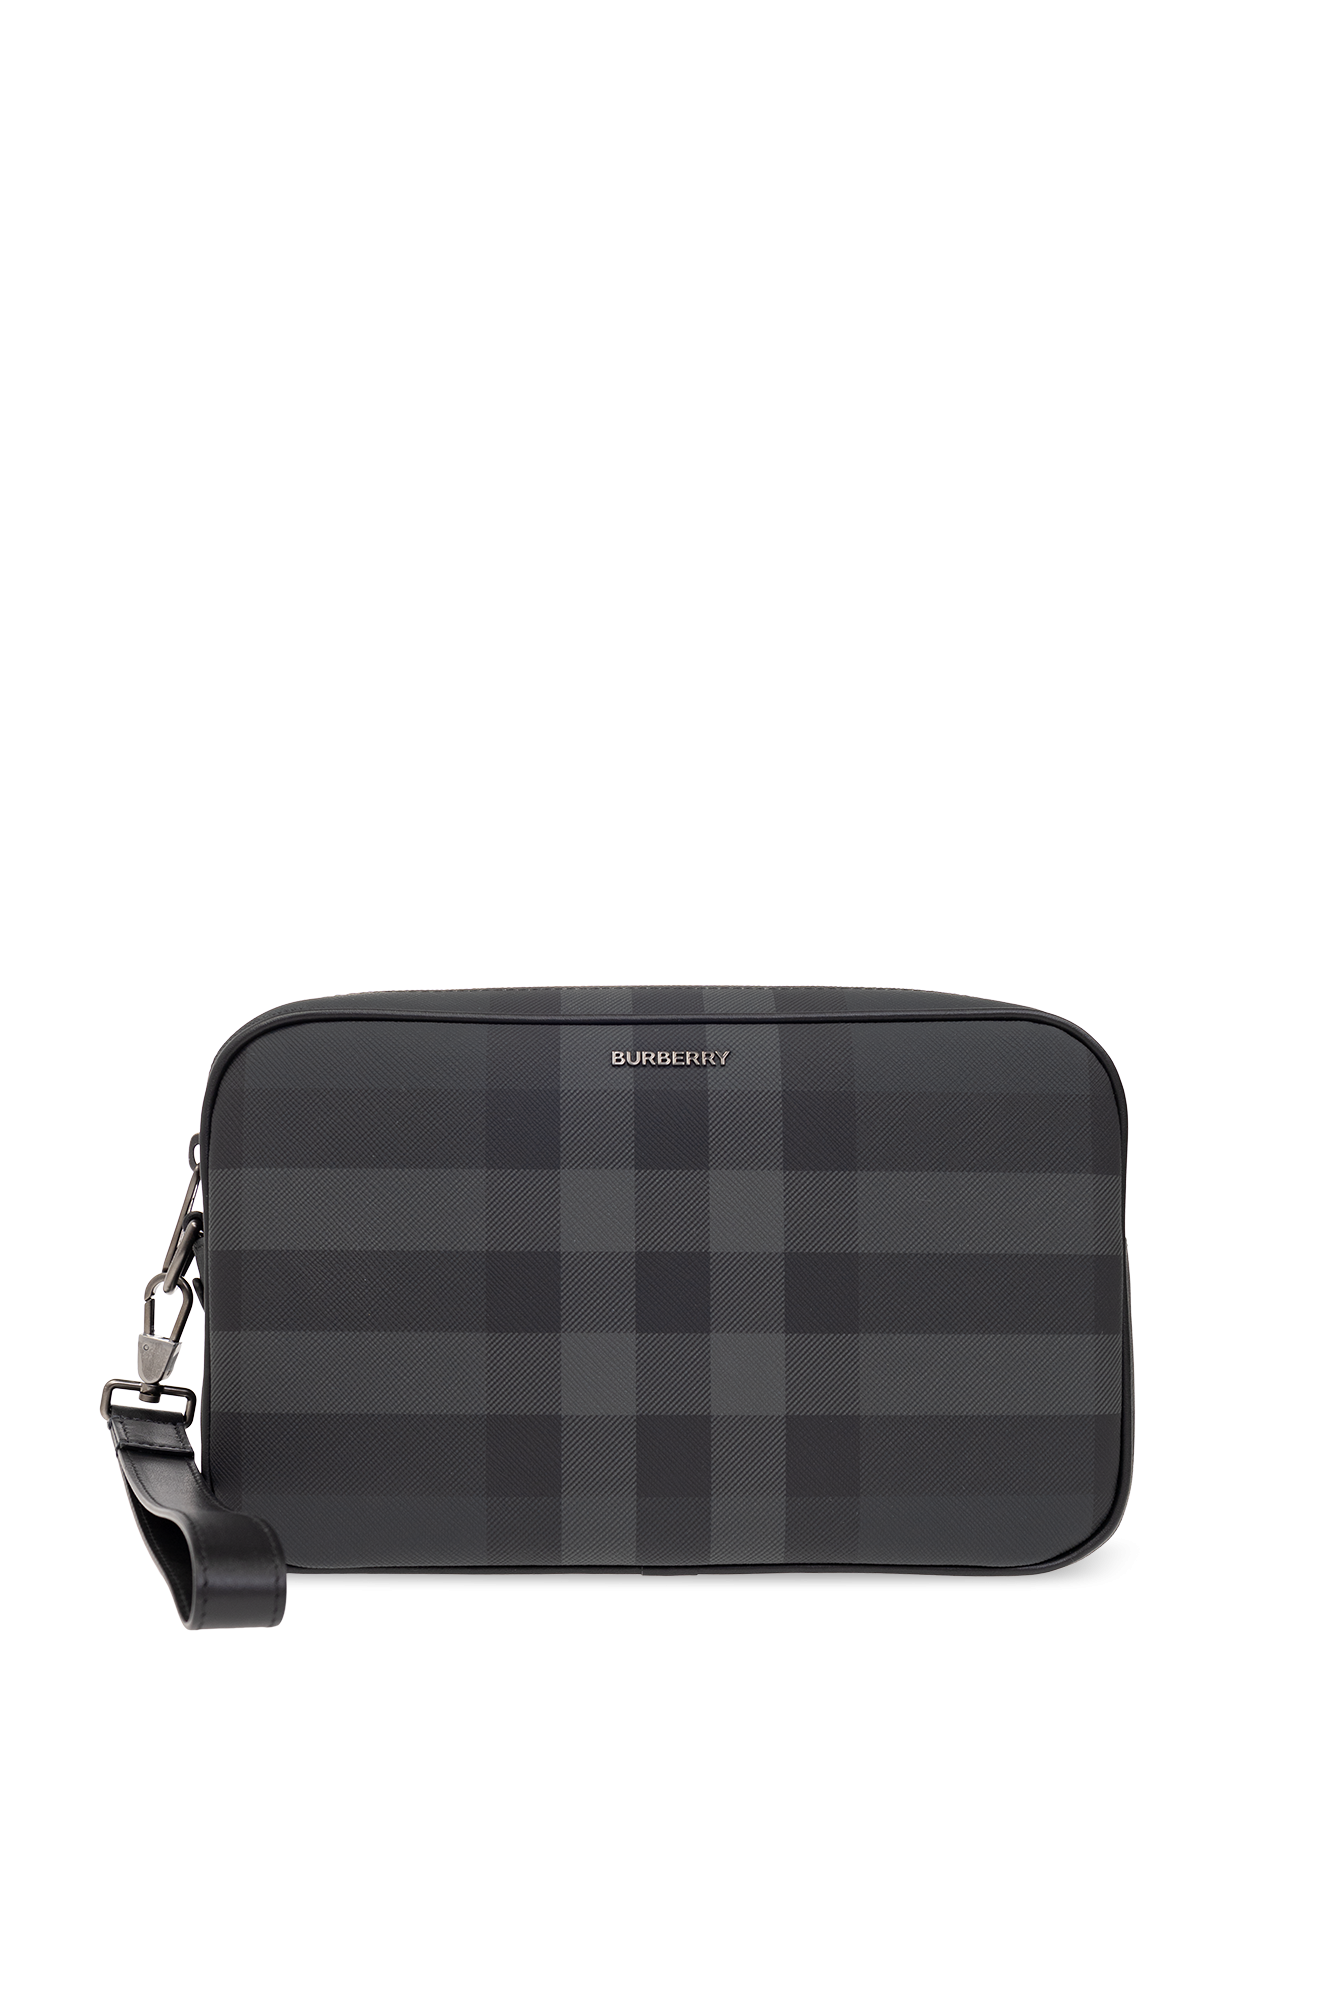 Burberry ‘Muswell’ handbag